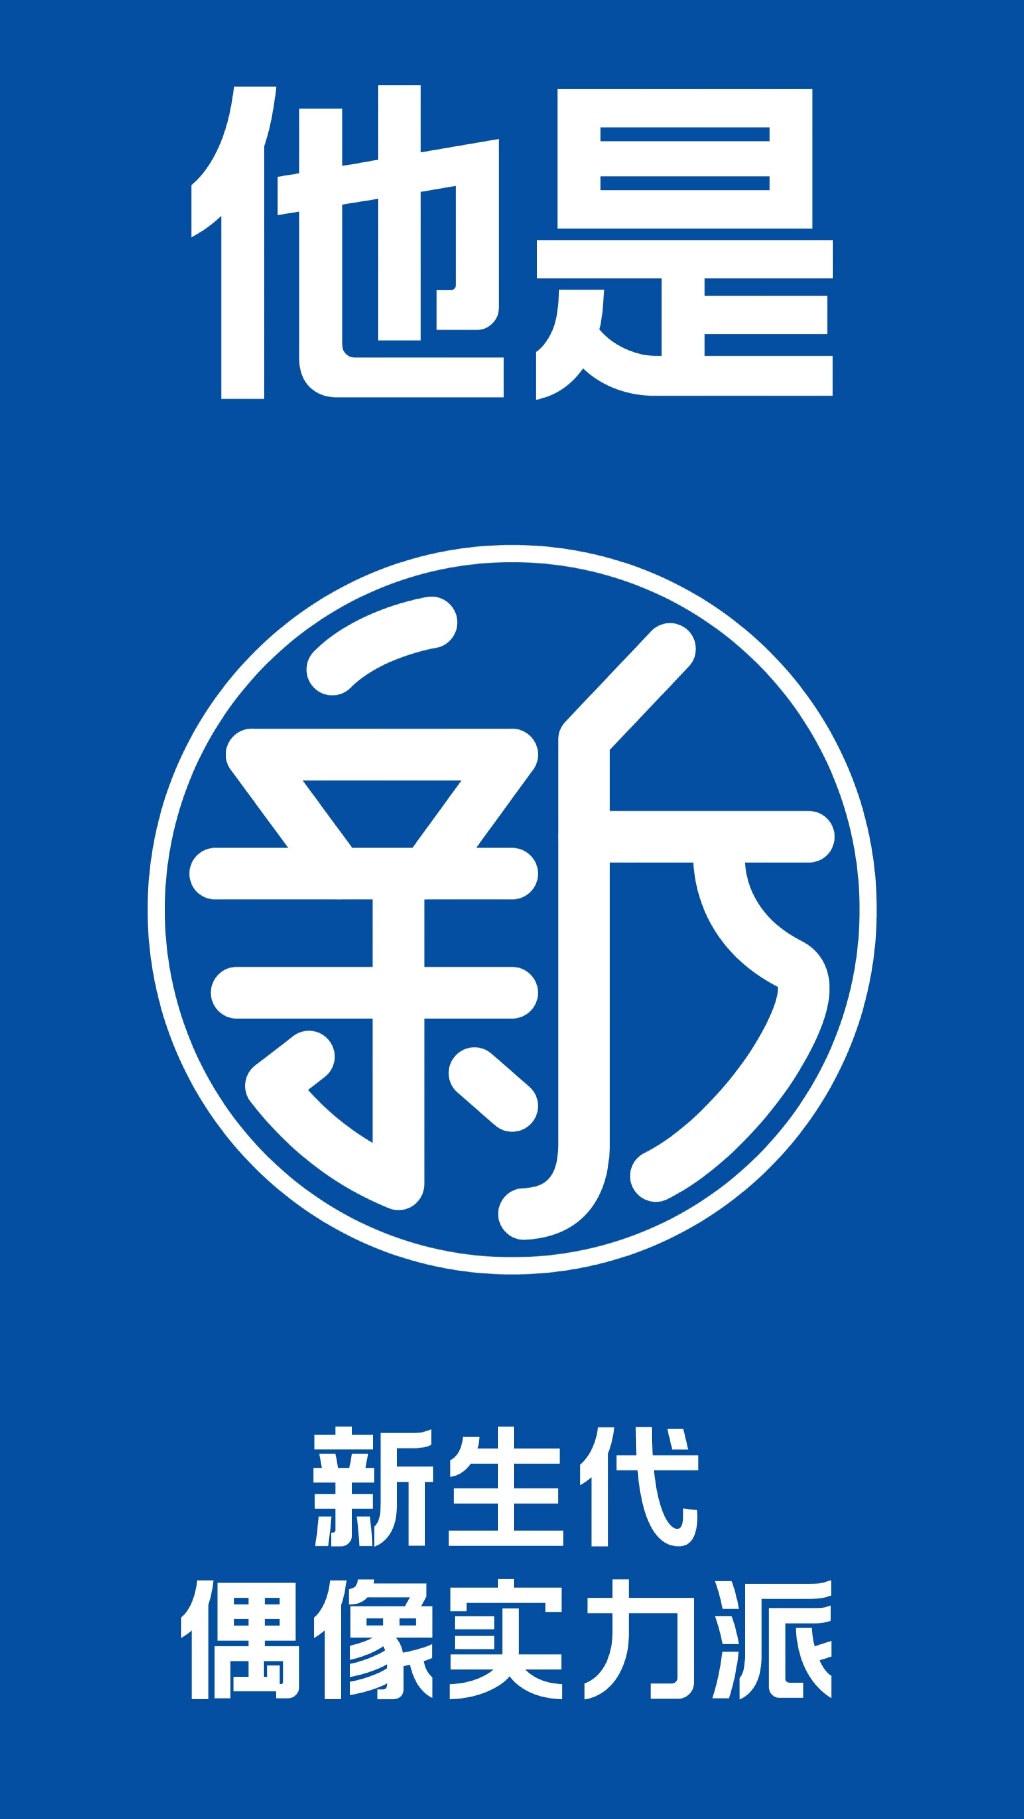 海飞丝logo含义图片